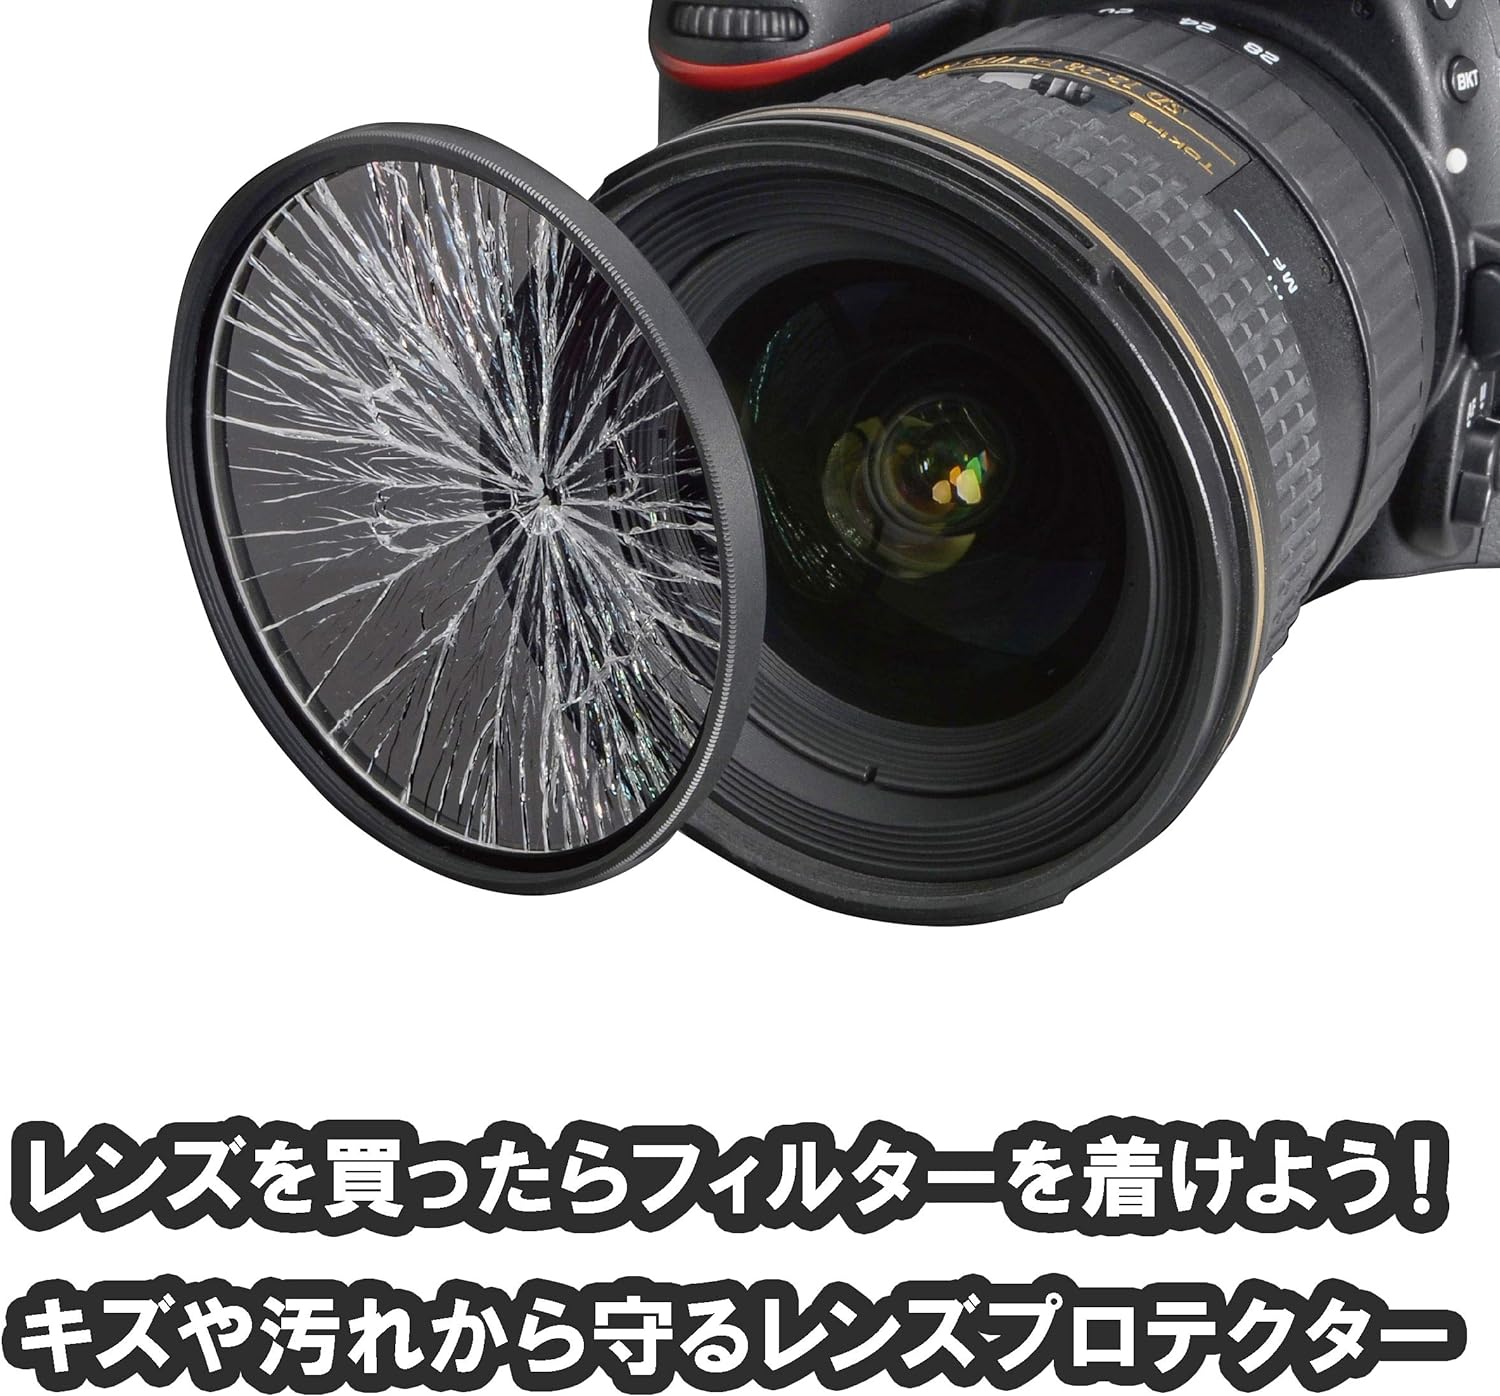 ケンコー 43mm レンズフィルター PRO1D プロテクター